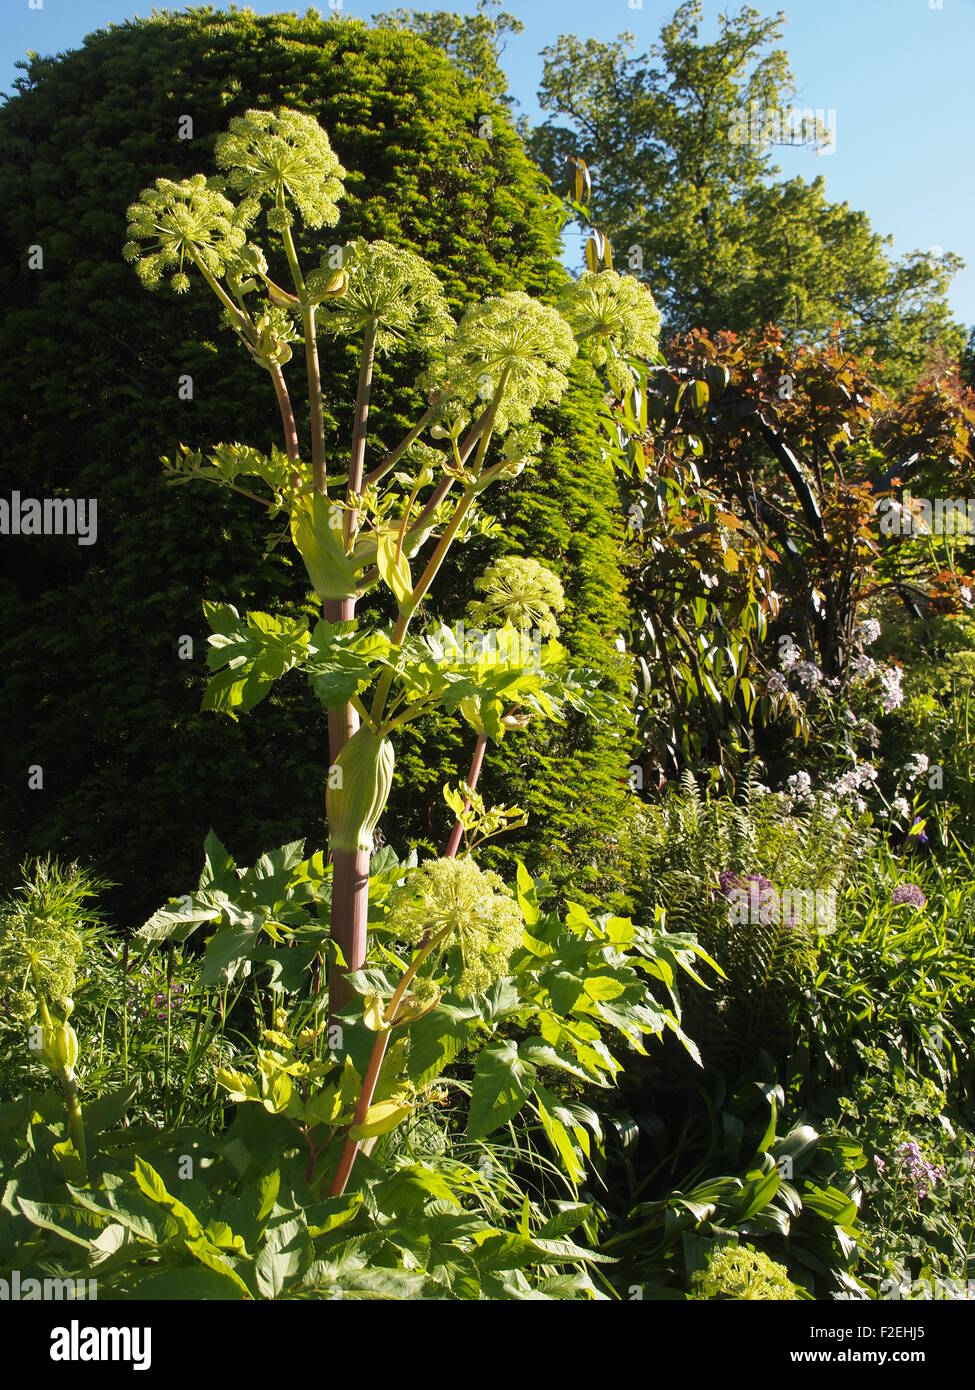 Angelica gigantica a Chenies Manor Garden; tall impianto architettonico, hosta, piante erbacee a inizio estate sole; visualizzazione verticale. Foto Stock